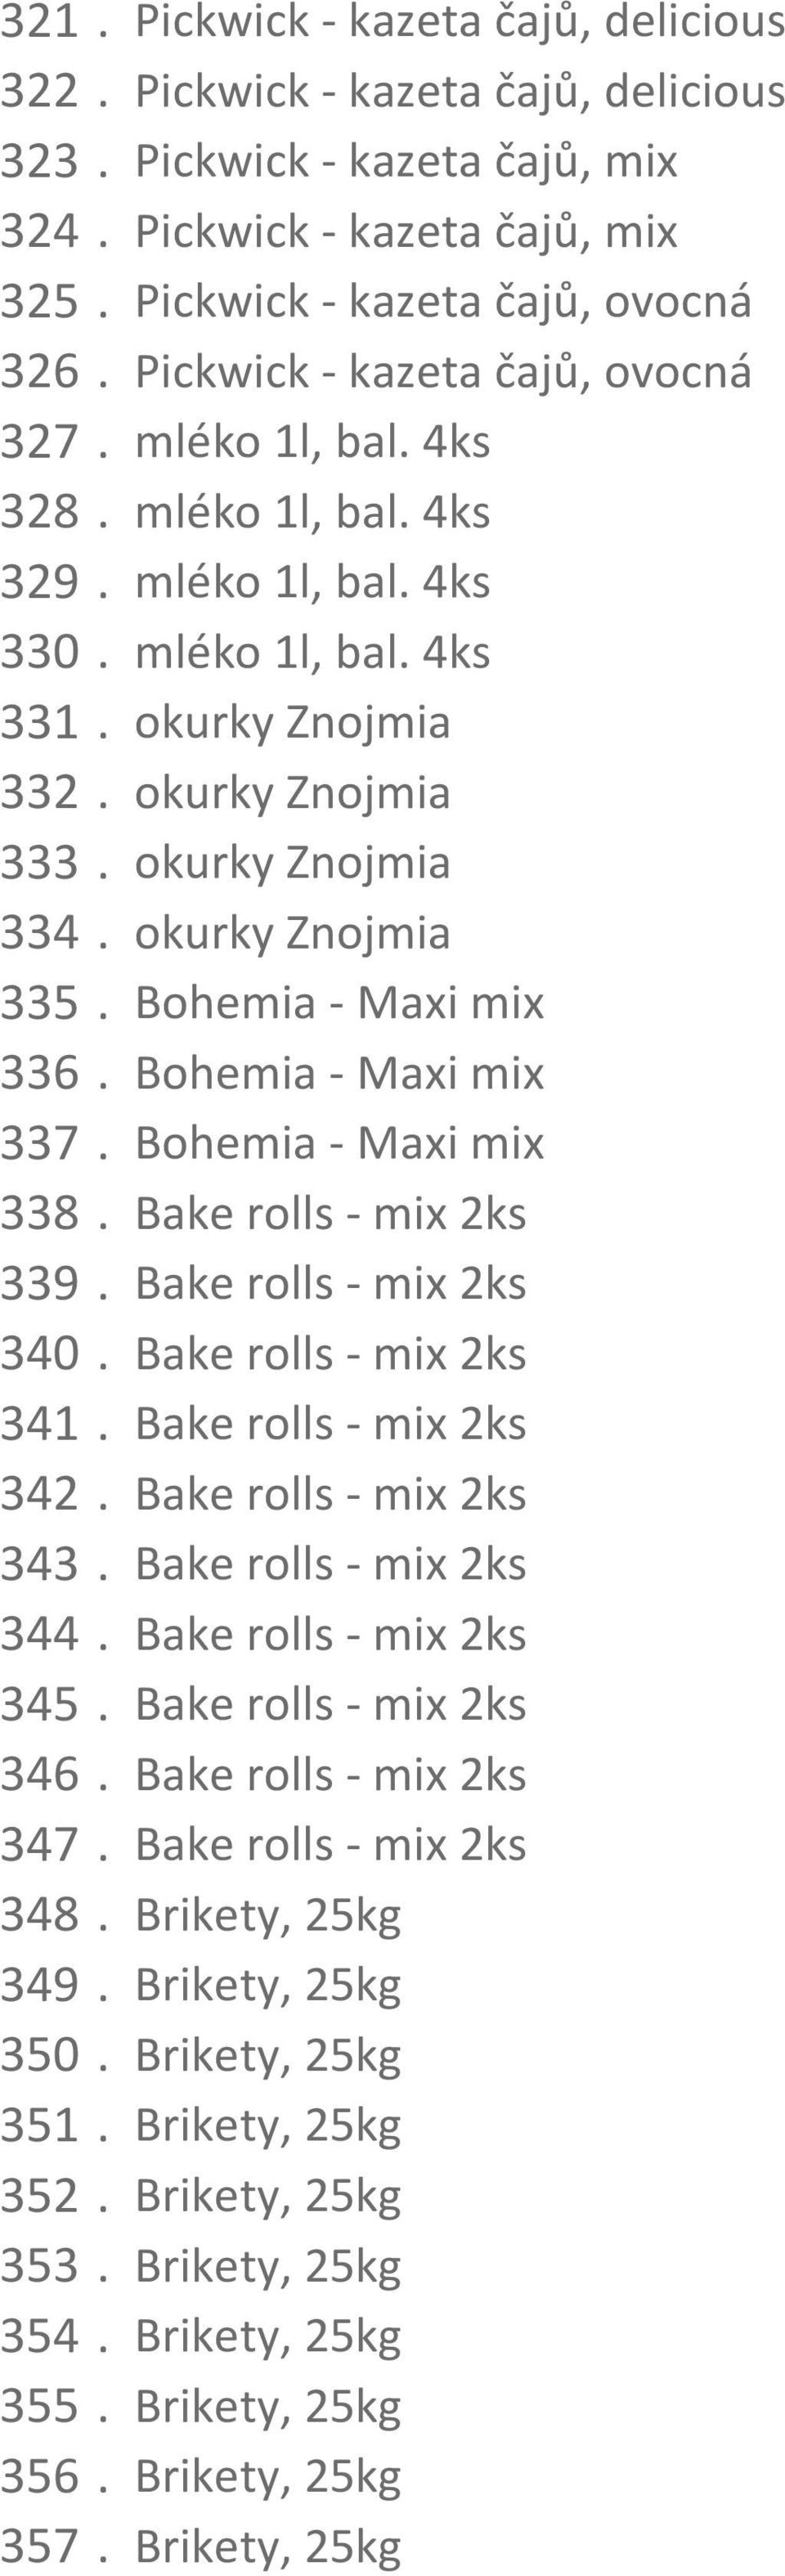 okurky Znojmia 335. Bohemia - Maxi mix 336. Bohemia - Maxi mix 337. Bohemia - Maxi mix 338. Bake rolls - mix 2ks 339. Bake rolls - mix 2ks 340. Bake rolls - mix 2ks 341. Bake rolls - mix 2ks 342.